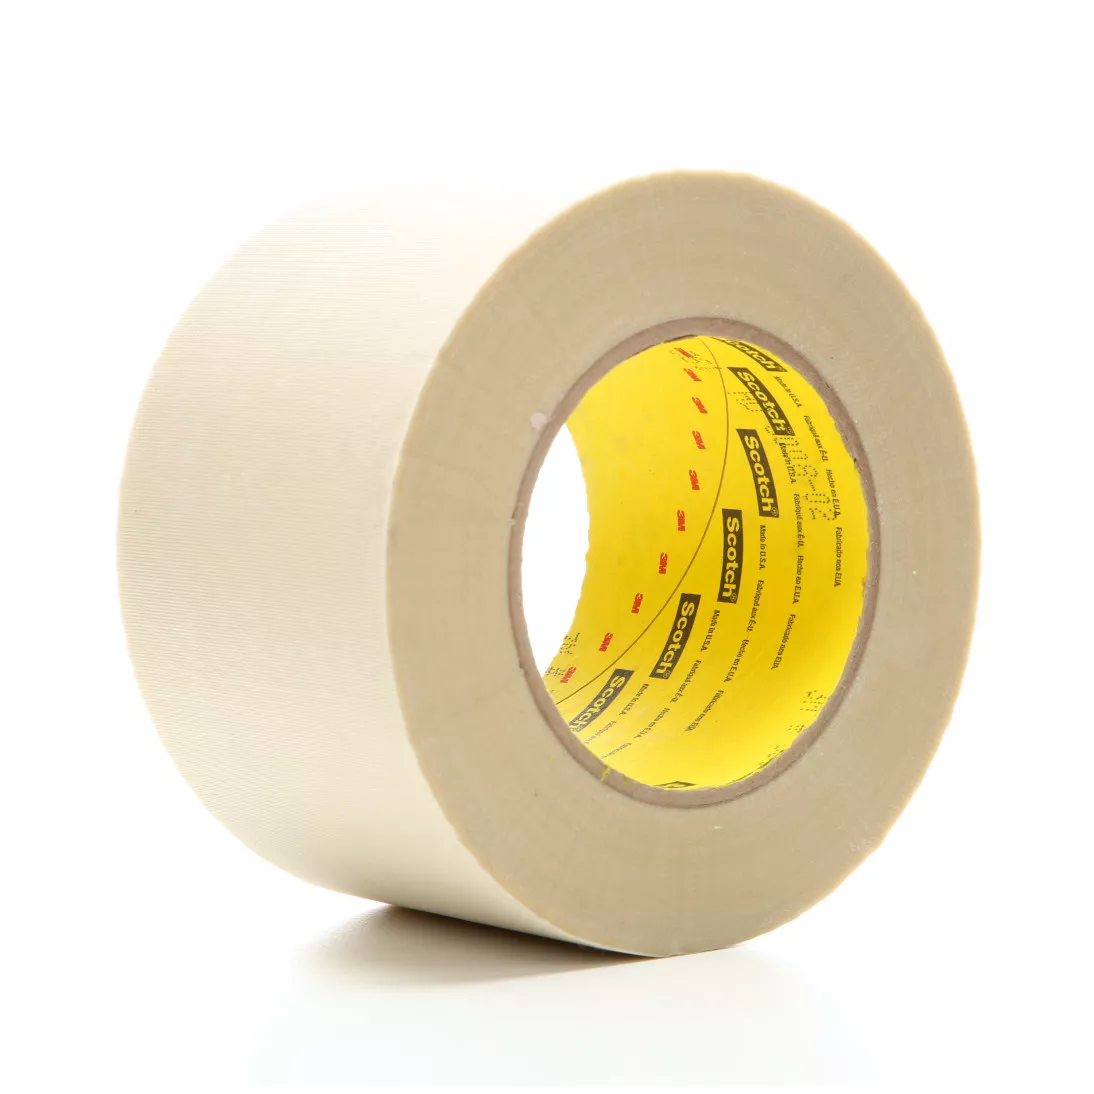 3M™ Glass Cloth Tape 361, White, 3 in x 60 yd, 6.4 mil, 12 rolls per
case